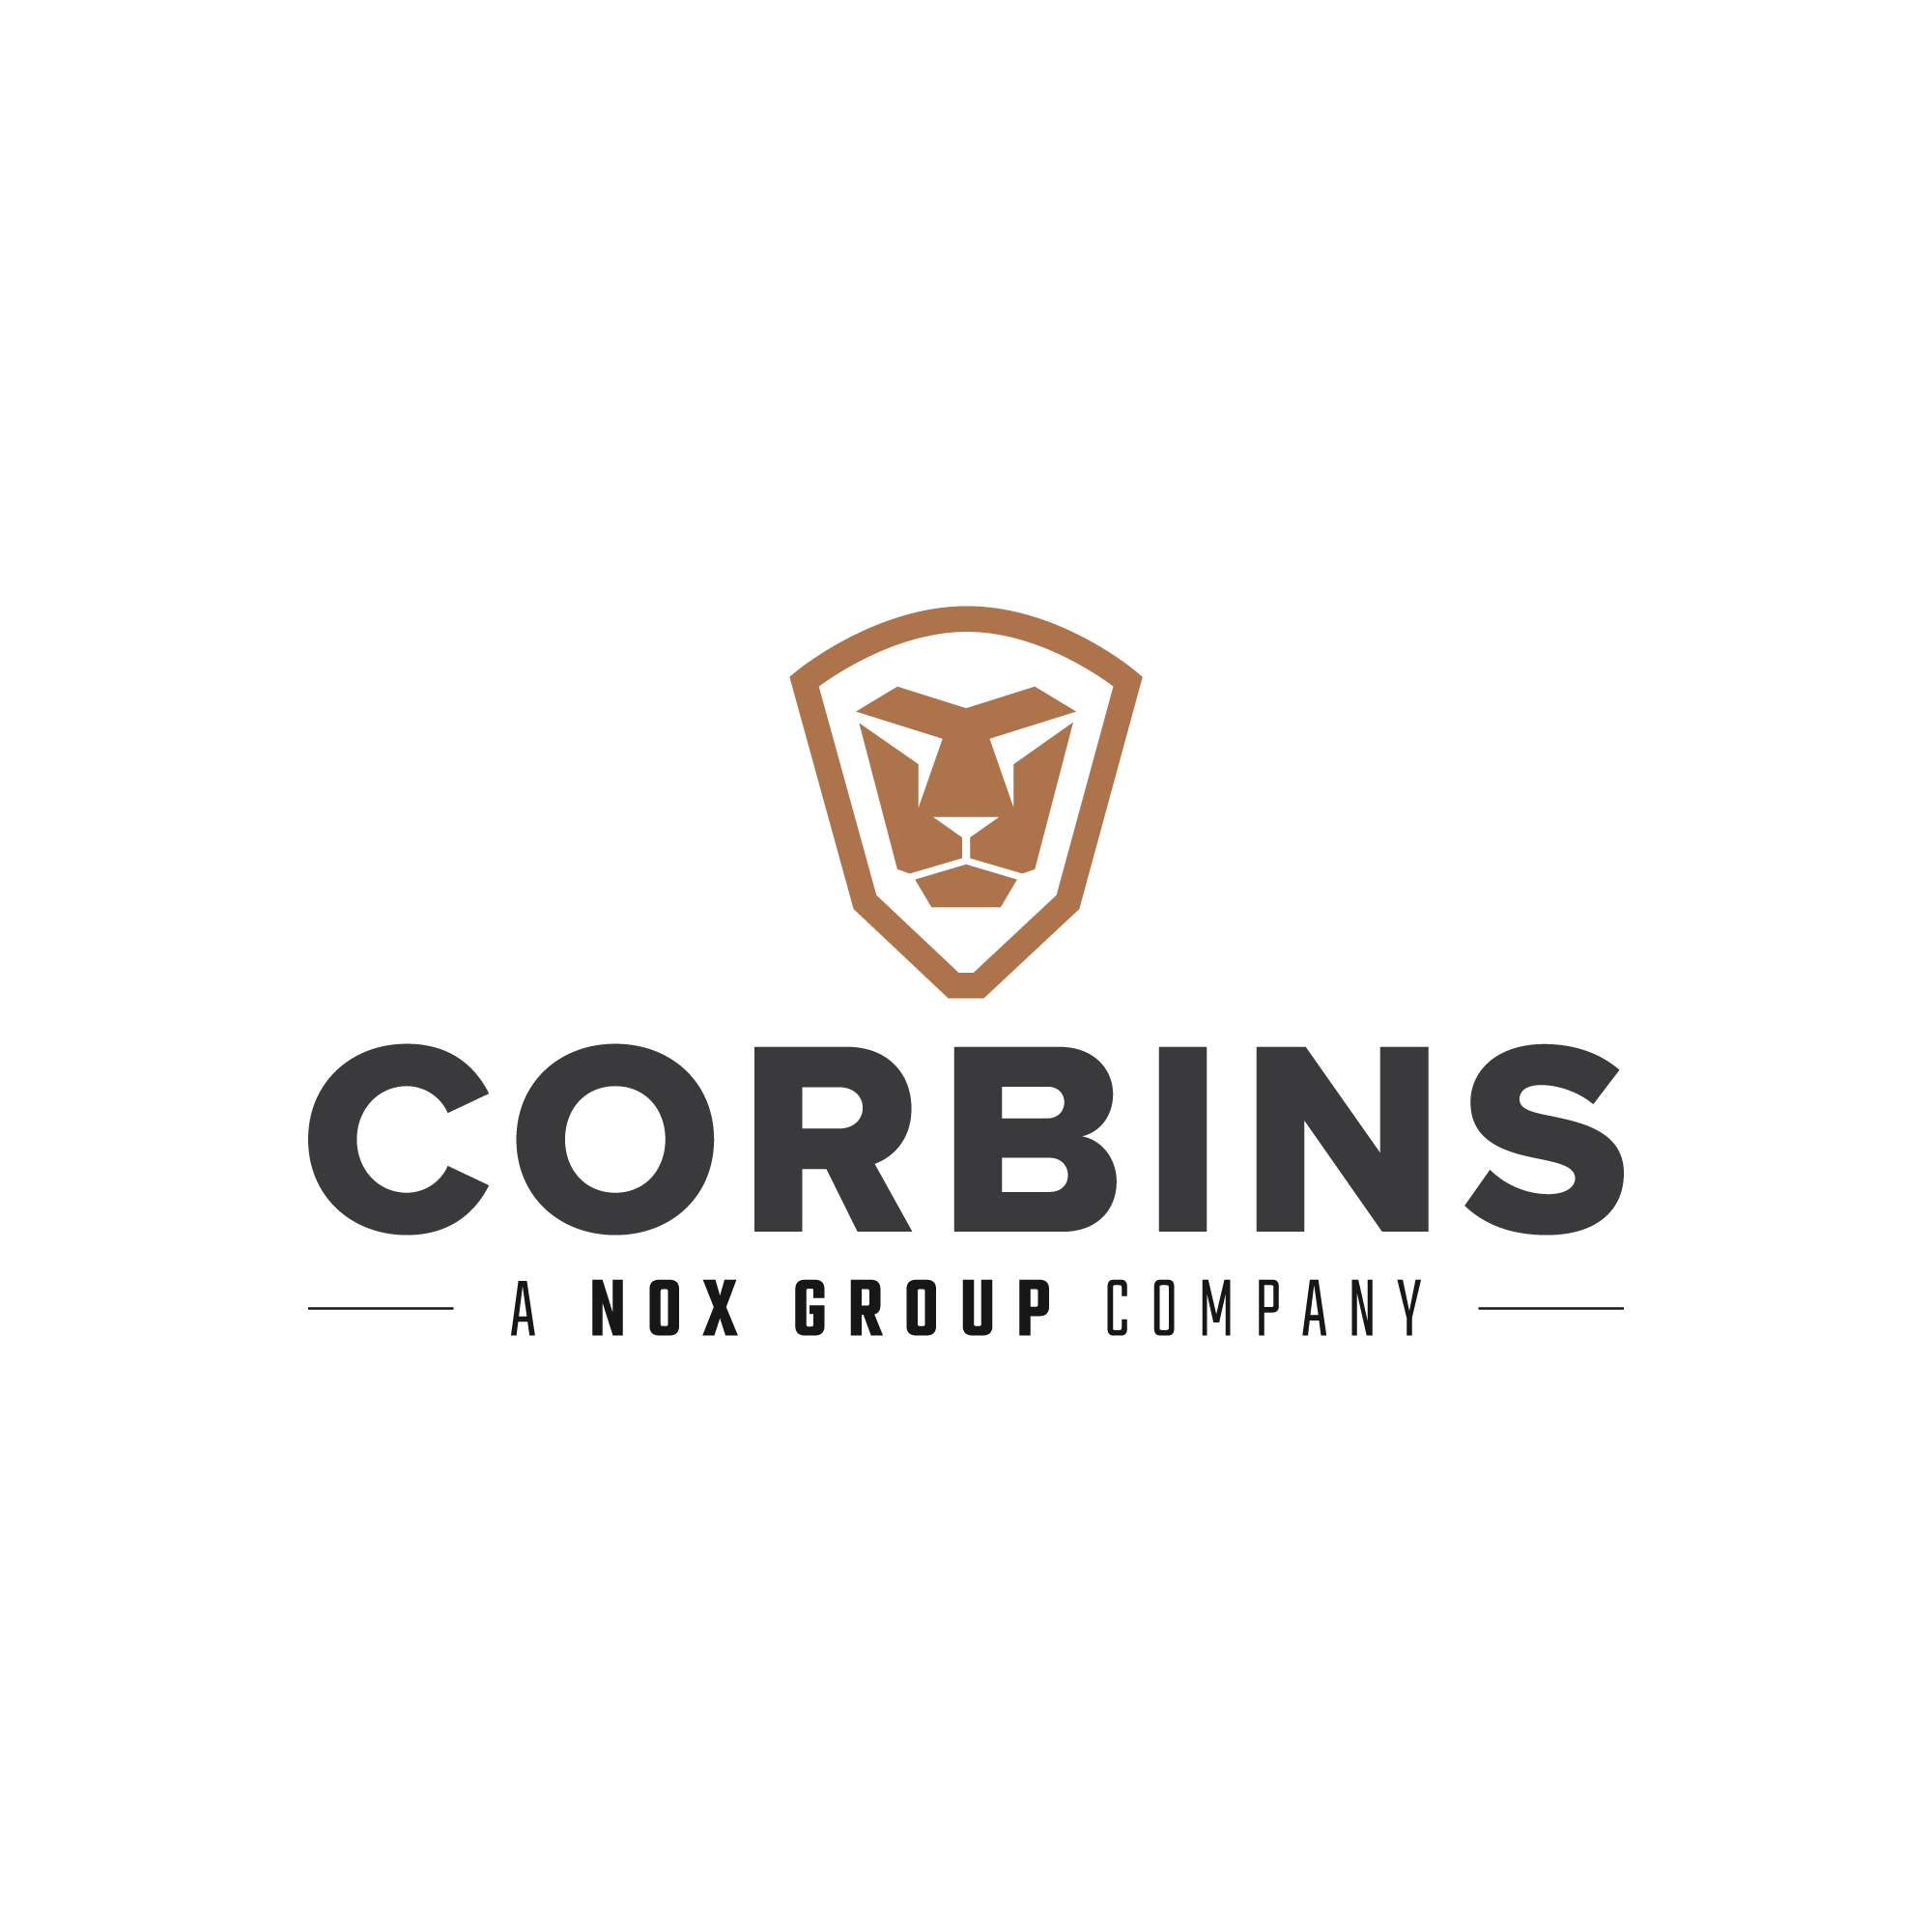 Logos - CORBINS